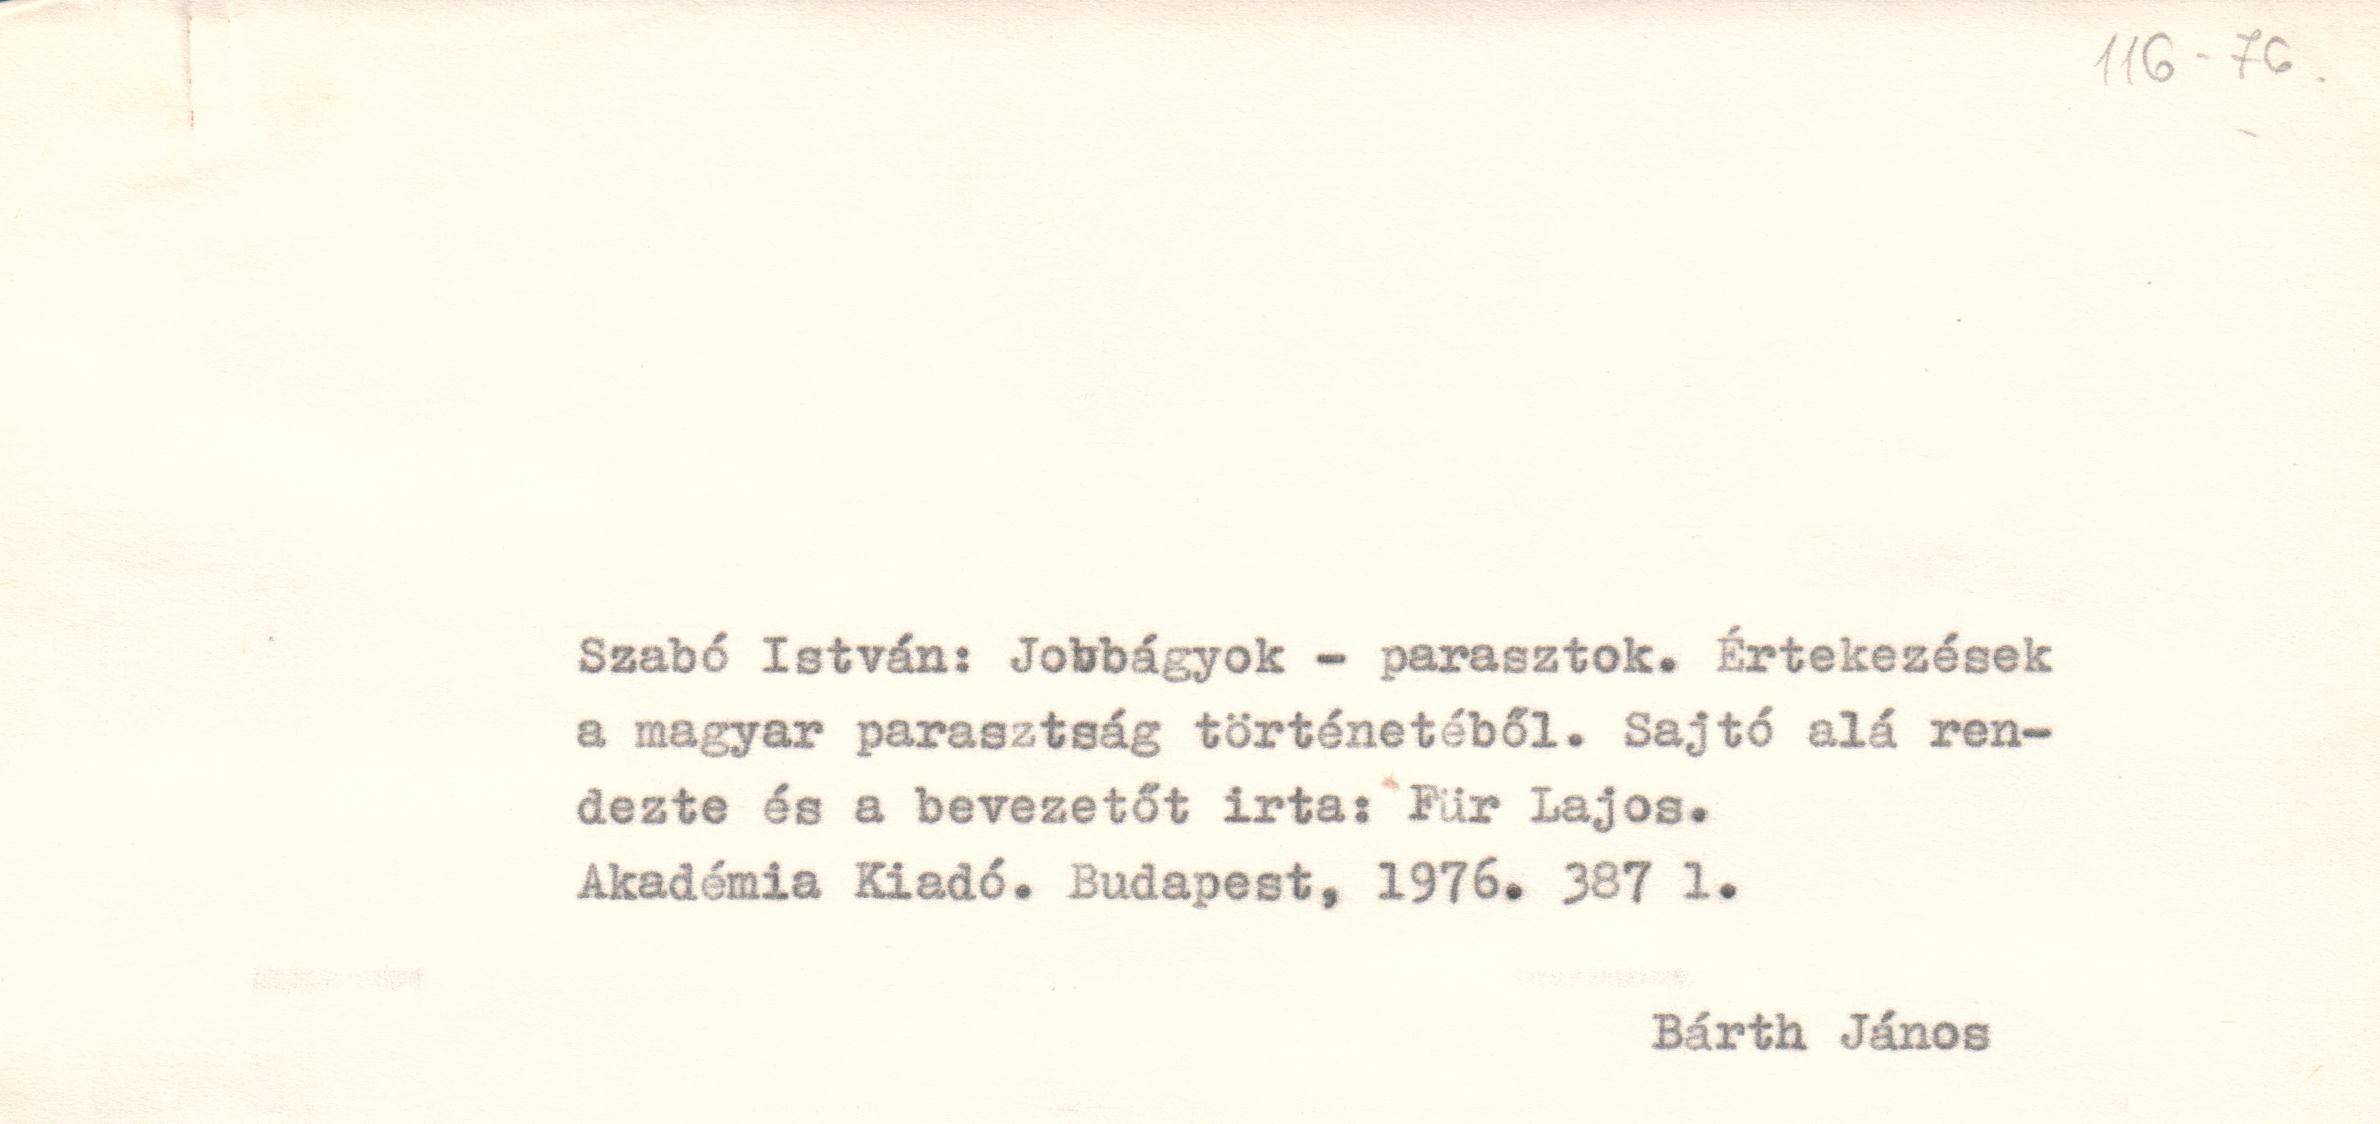 Szabó István: Jobbágyok- parasztok c. könyvismertetés gépirata. (Viski Károly Múzeum Kalocsa RR-F)